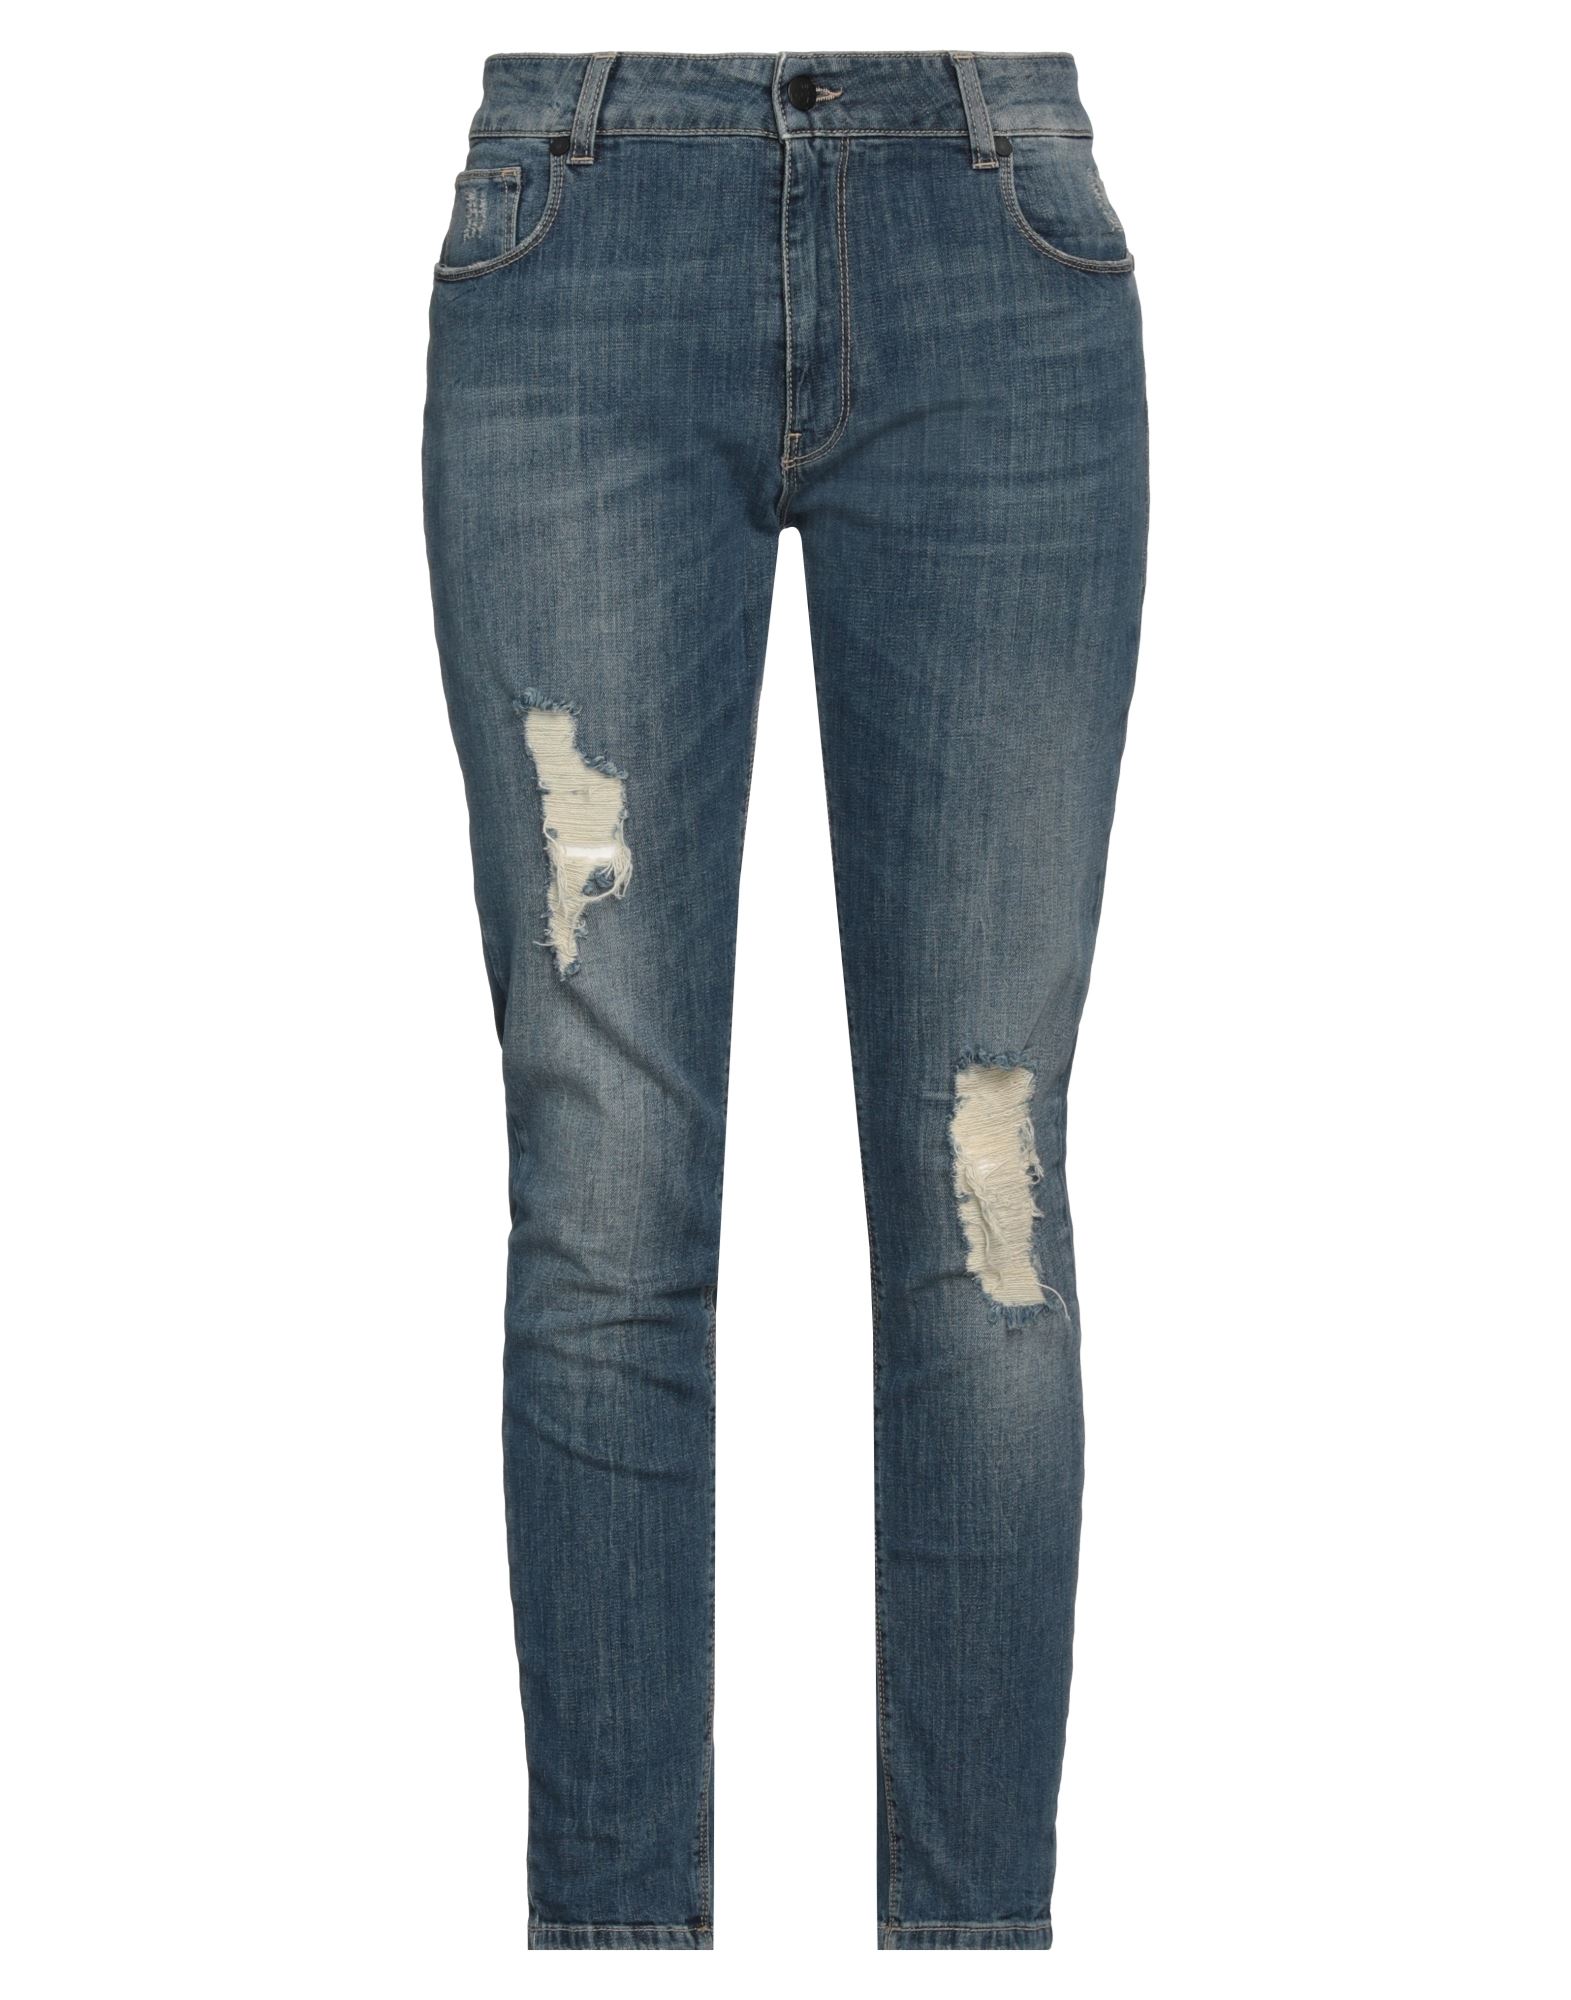 Up ★ Jeans Woman Jeans Blue Size 31 Cotton, Elastane